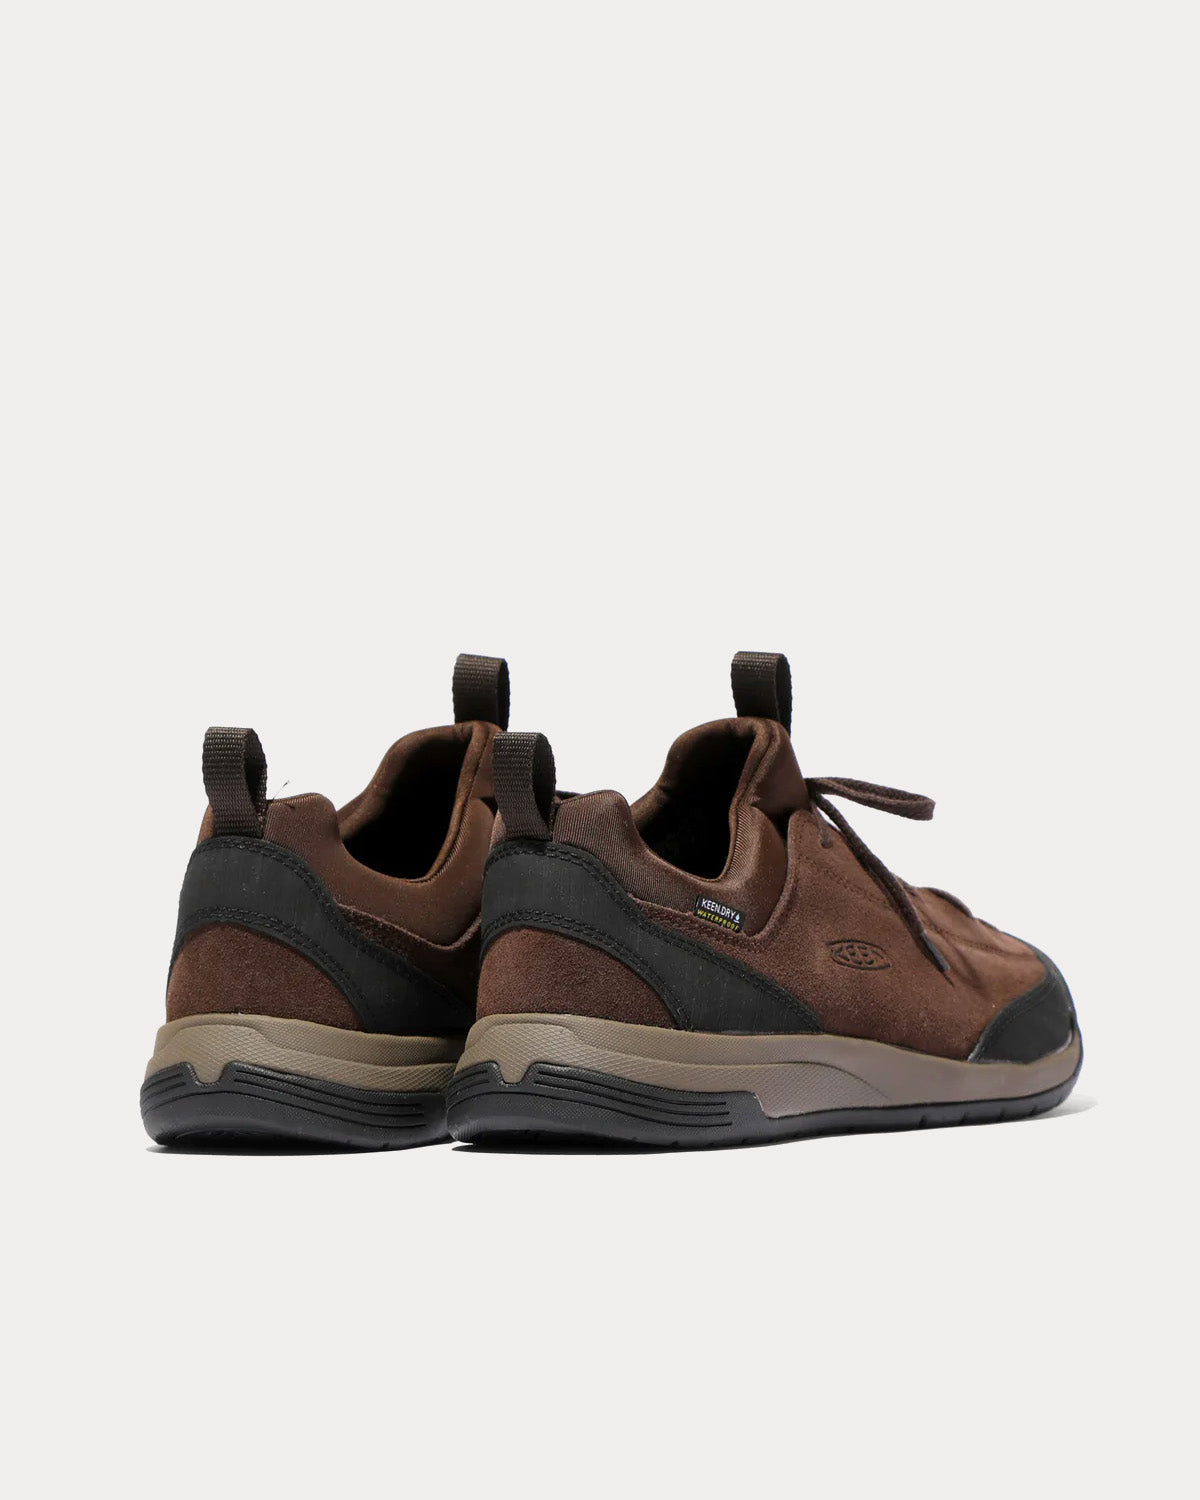 Keen x Engineered Garments - Jasper II Waterproof Moc Brown Low Top Sneakers